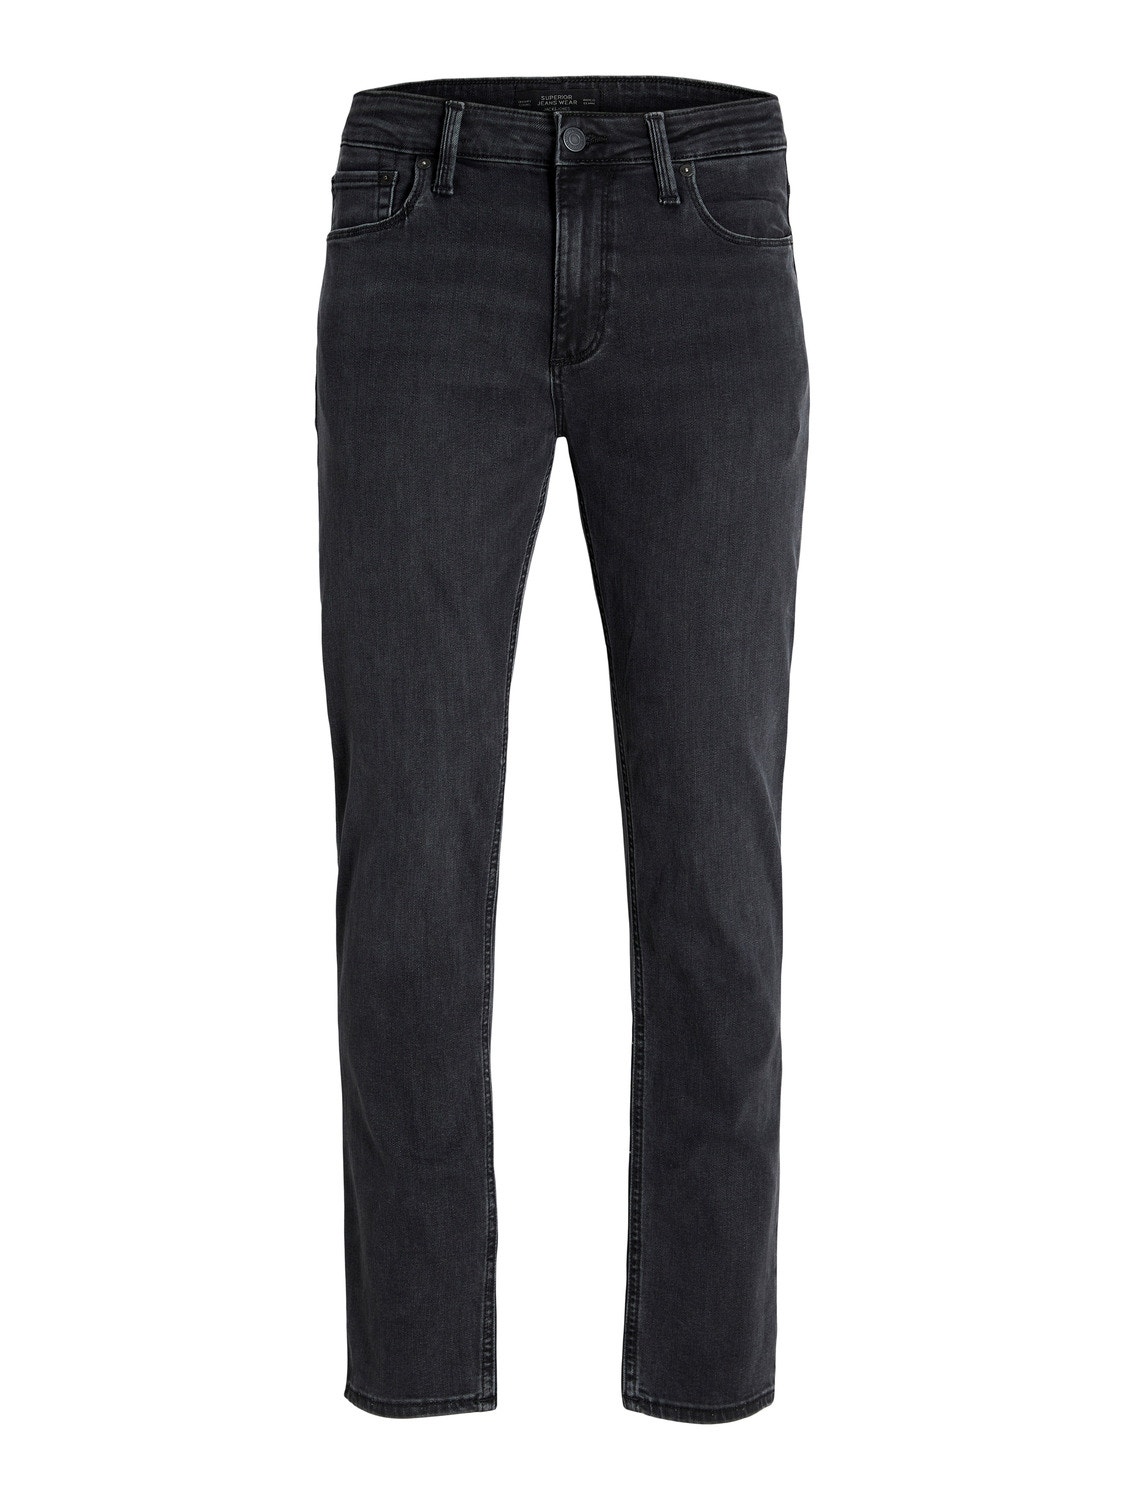 Jack & Jones JJIMIKE JJEVAN AM 777 LID Jeans tapered fit -Black Denim - 12245229